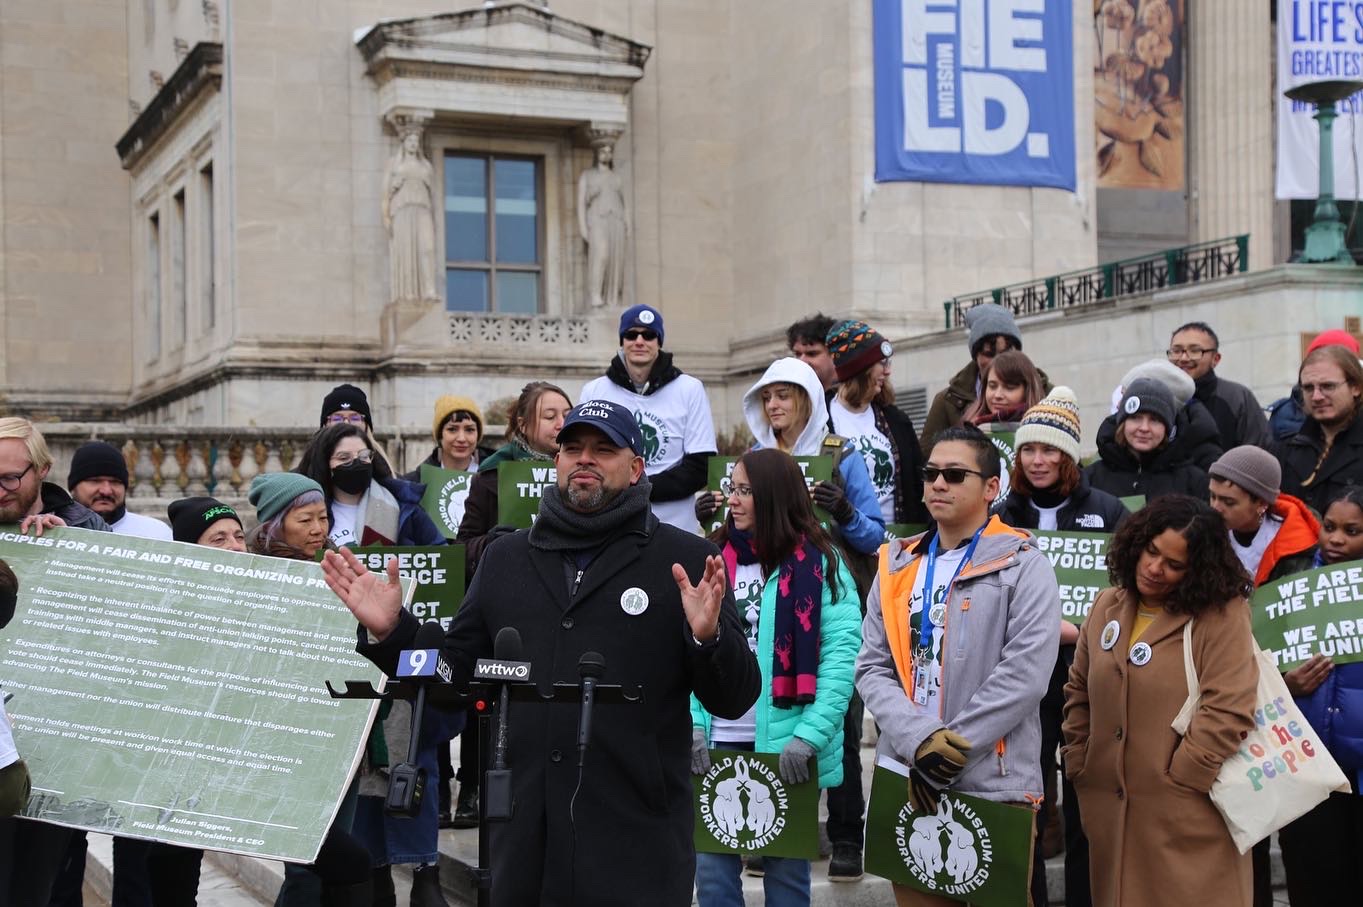 Alderperson Vasquez spoke in support of Field Museum workers